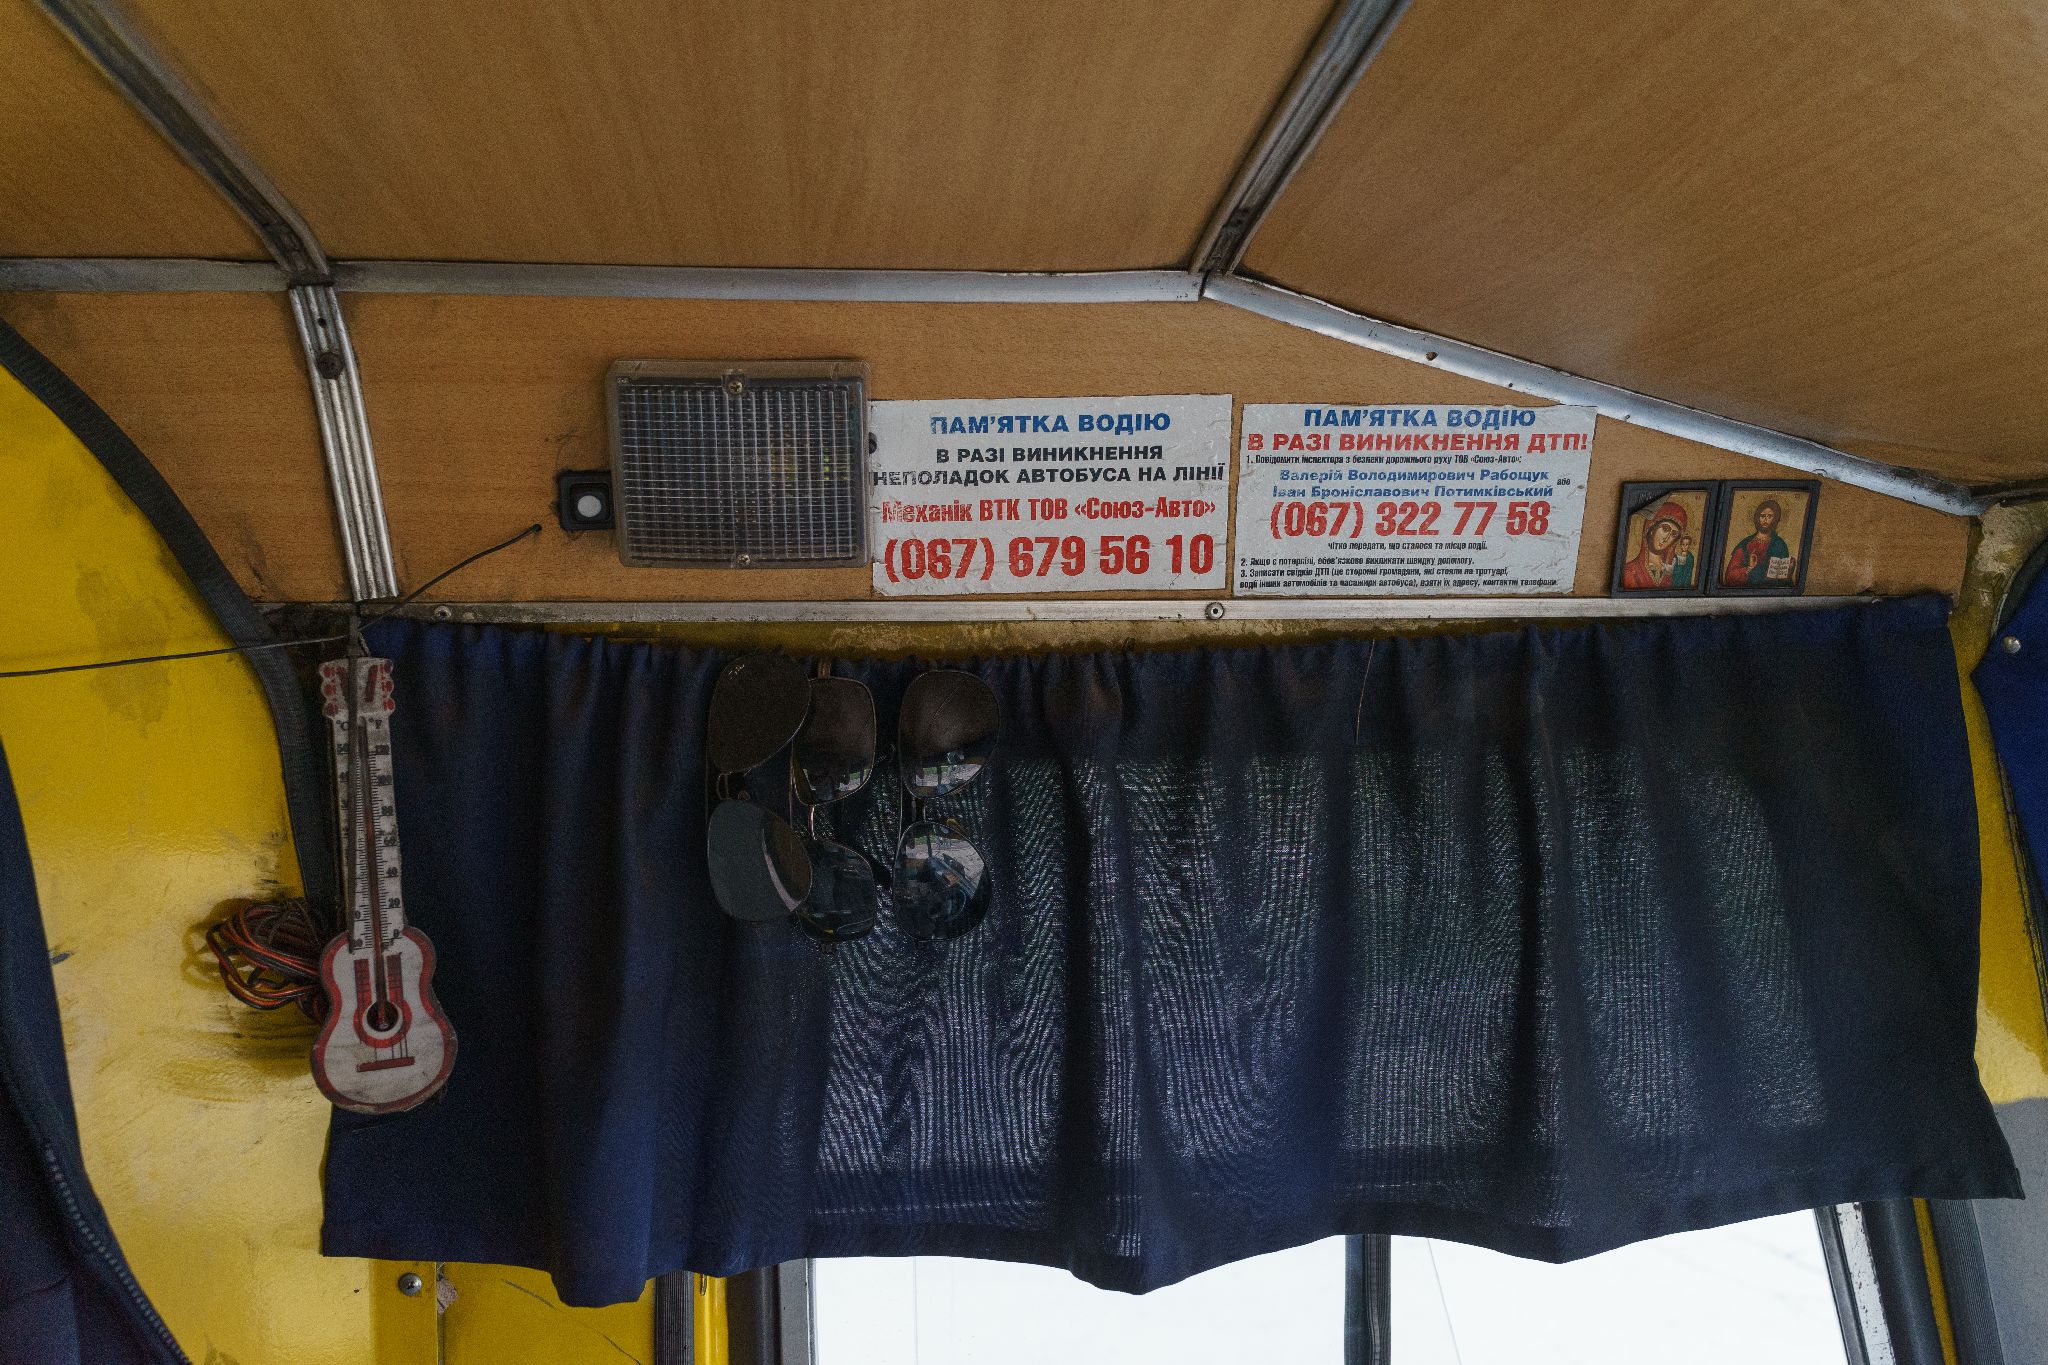 Декор в київських автобусах, Київ, жовтень 2021 року. Фото: Дмитро Пруткін